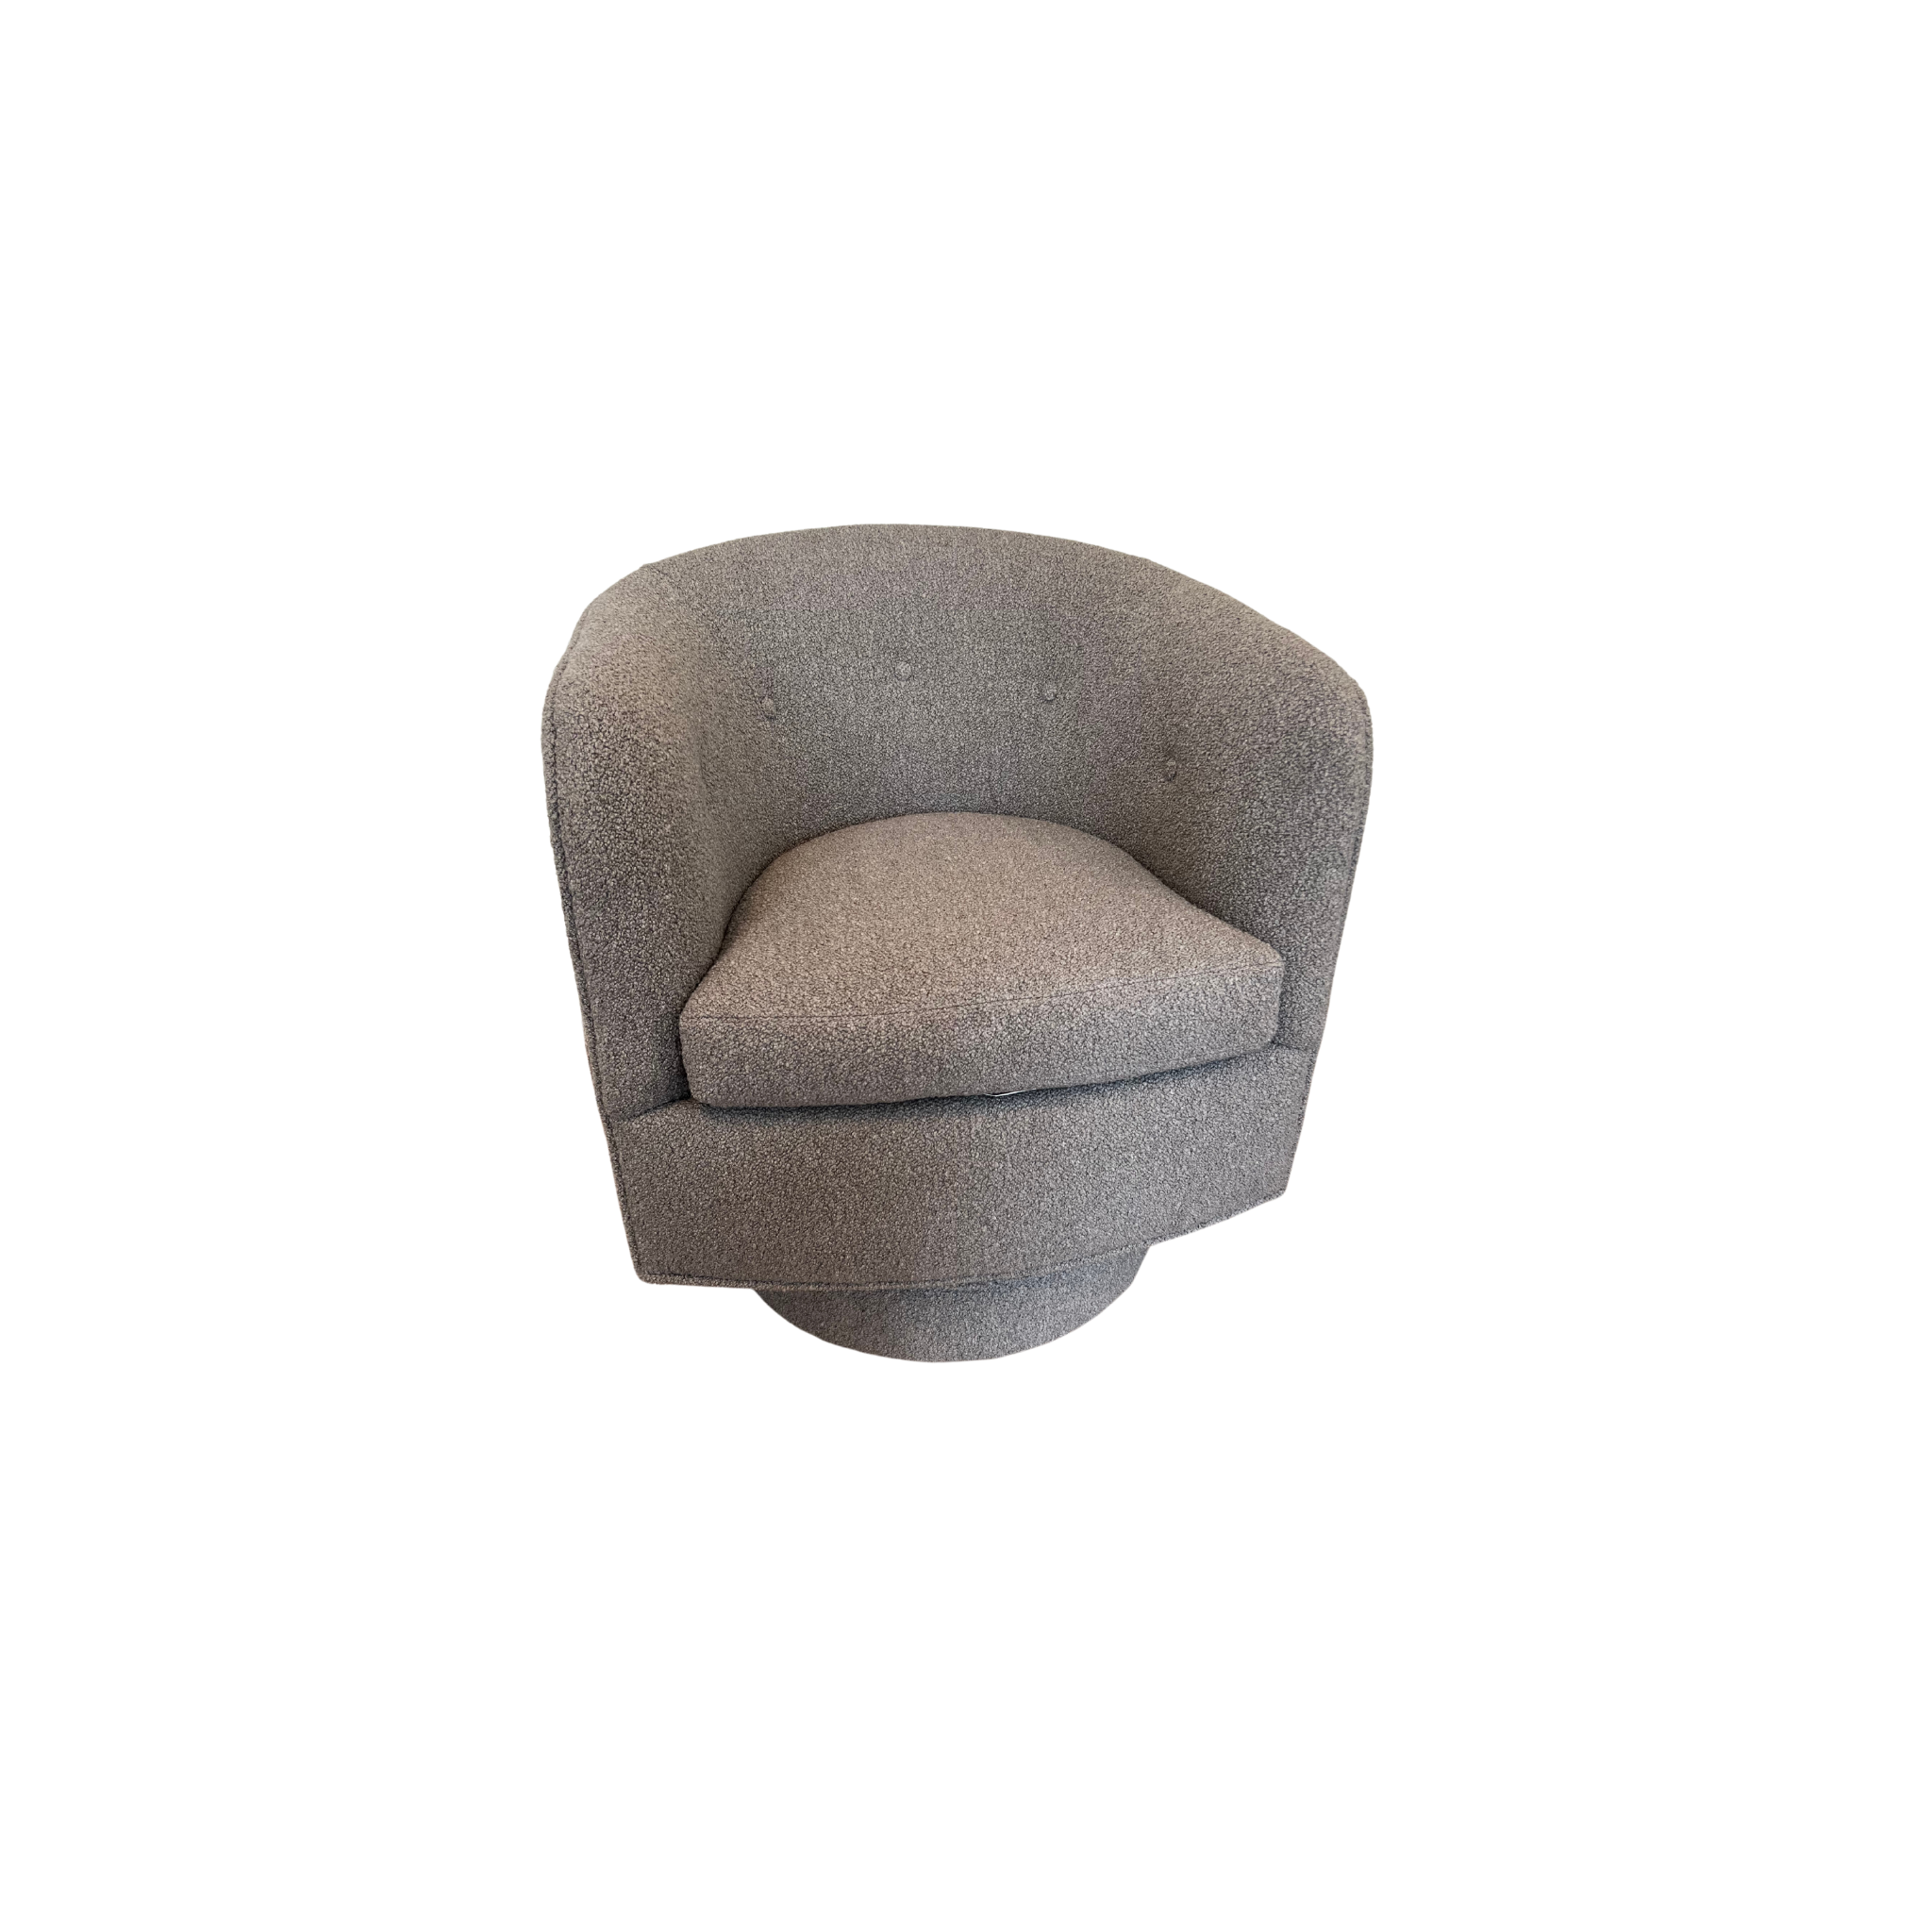 Roxy Swivel Chair 1283-113; 9-2199-80